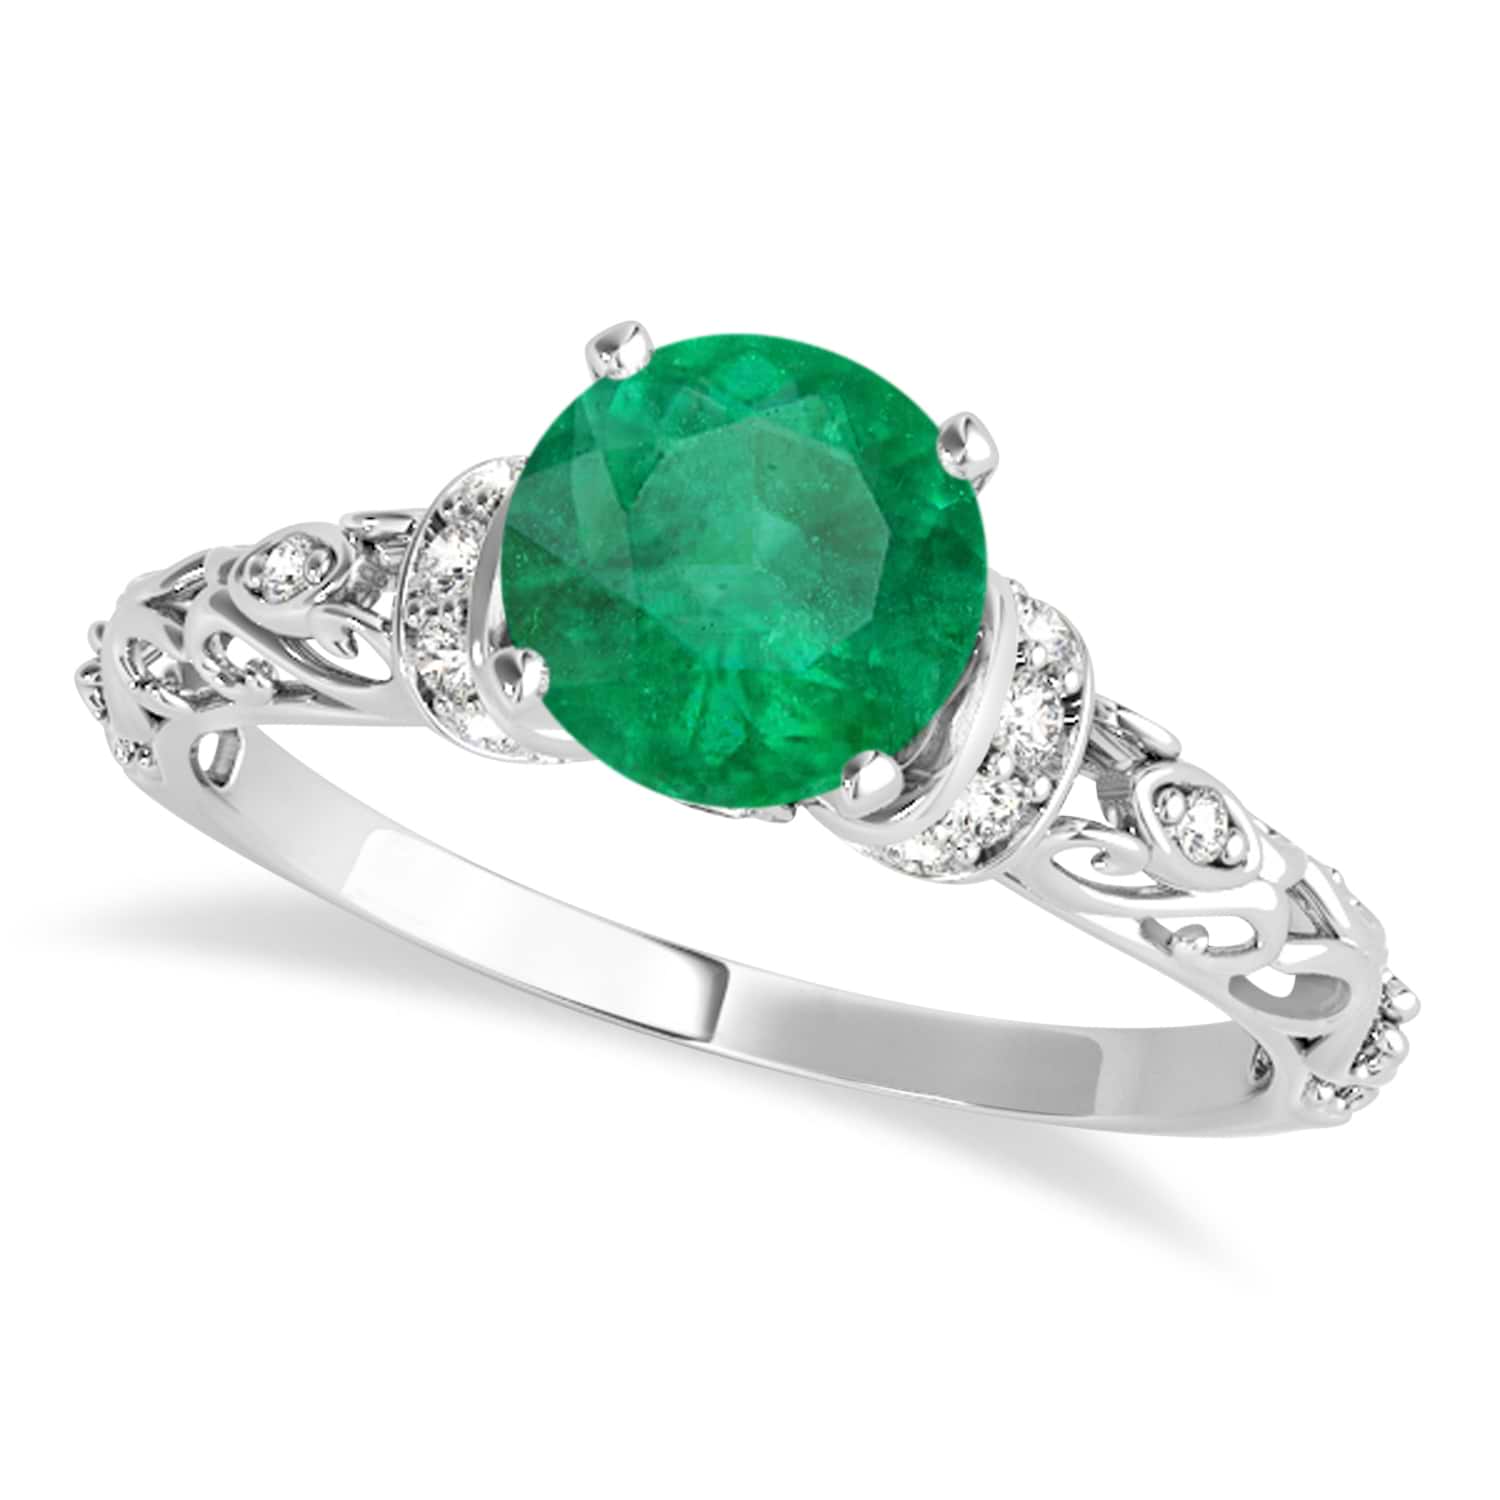 Emerald & Diamond Antique Style Engagement Ring Platinum (1.12ct)